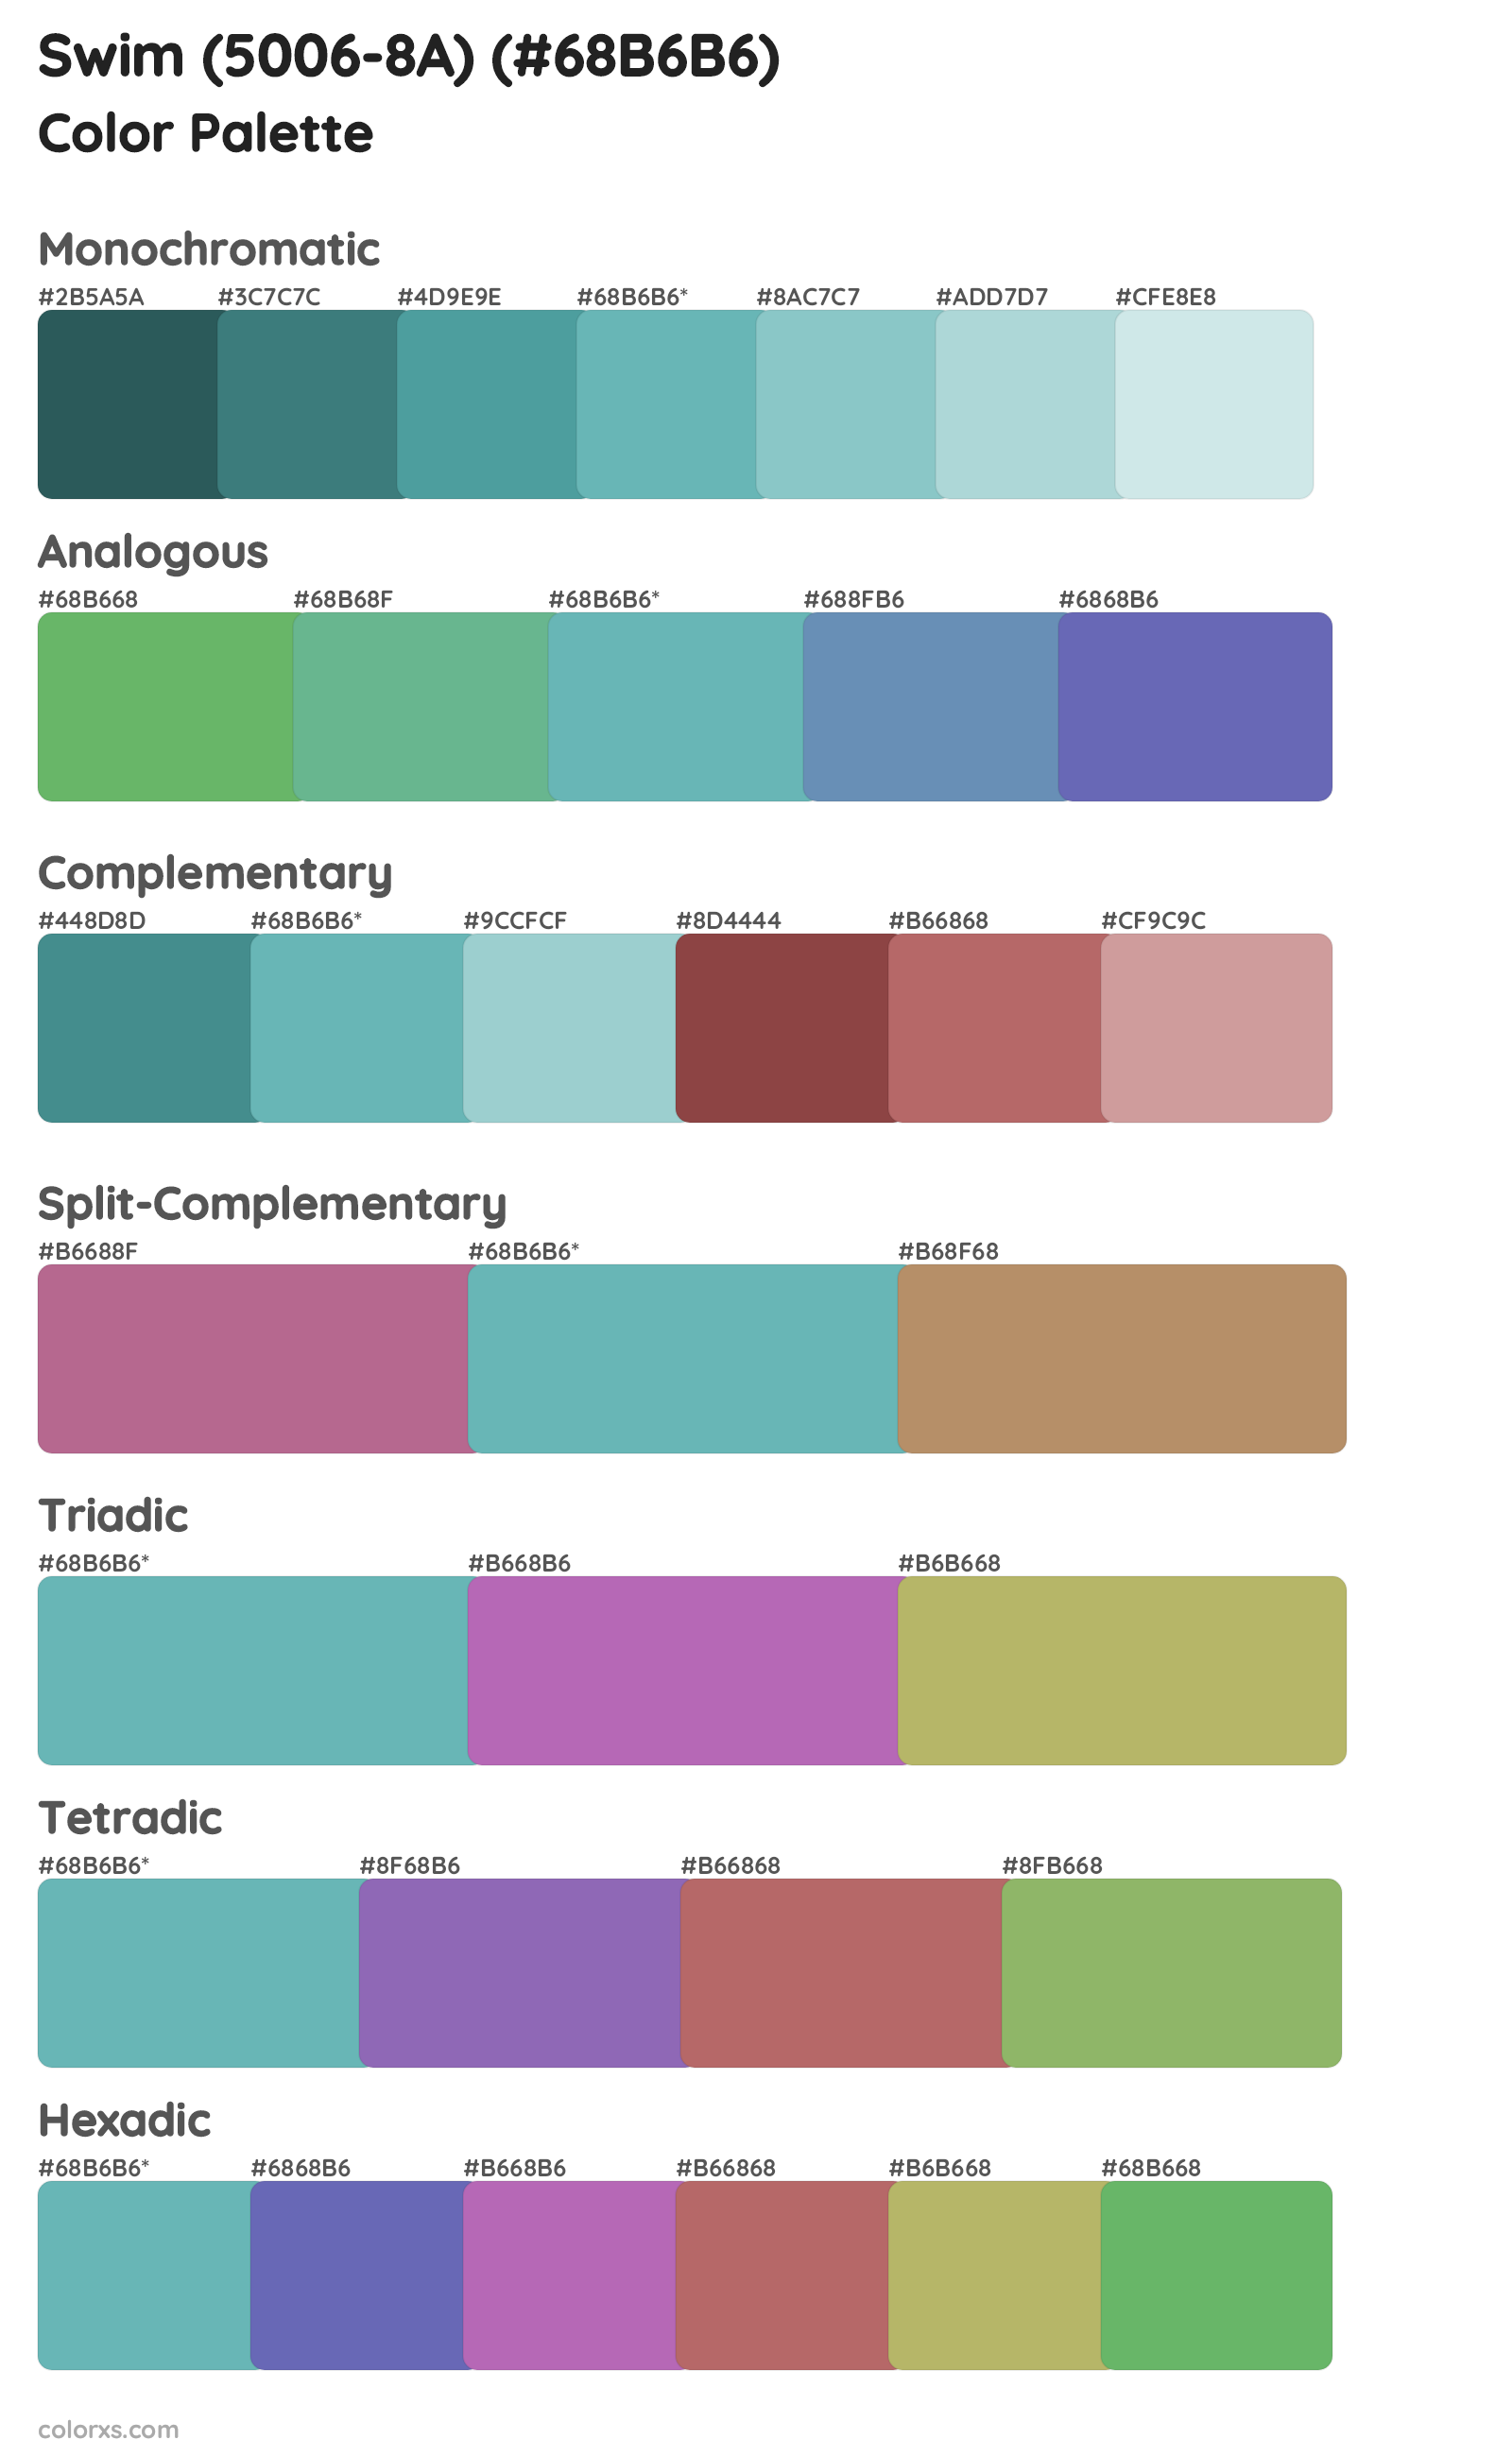 Swim (5006-8A) Color Scheme Palettes